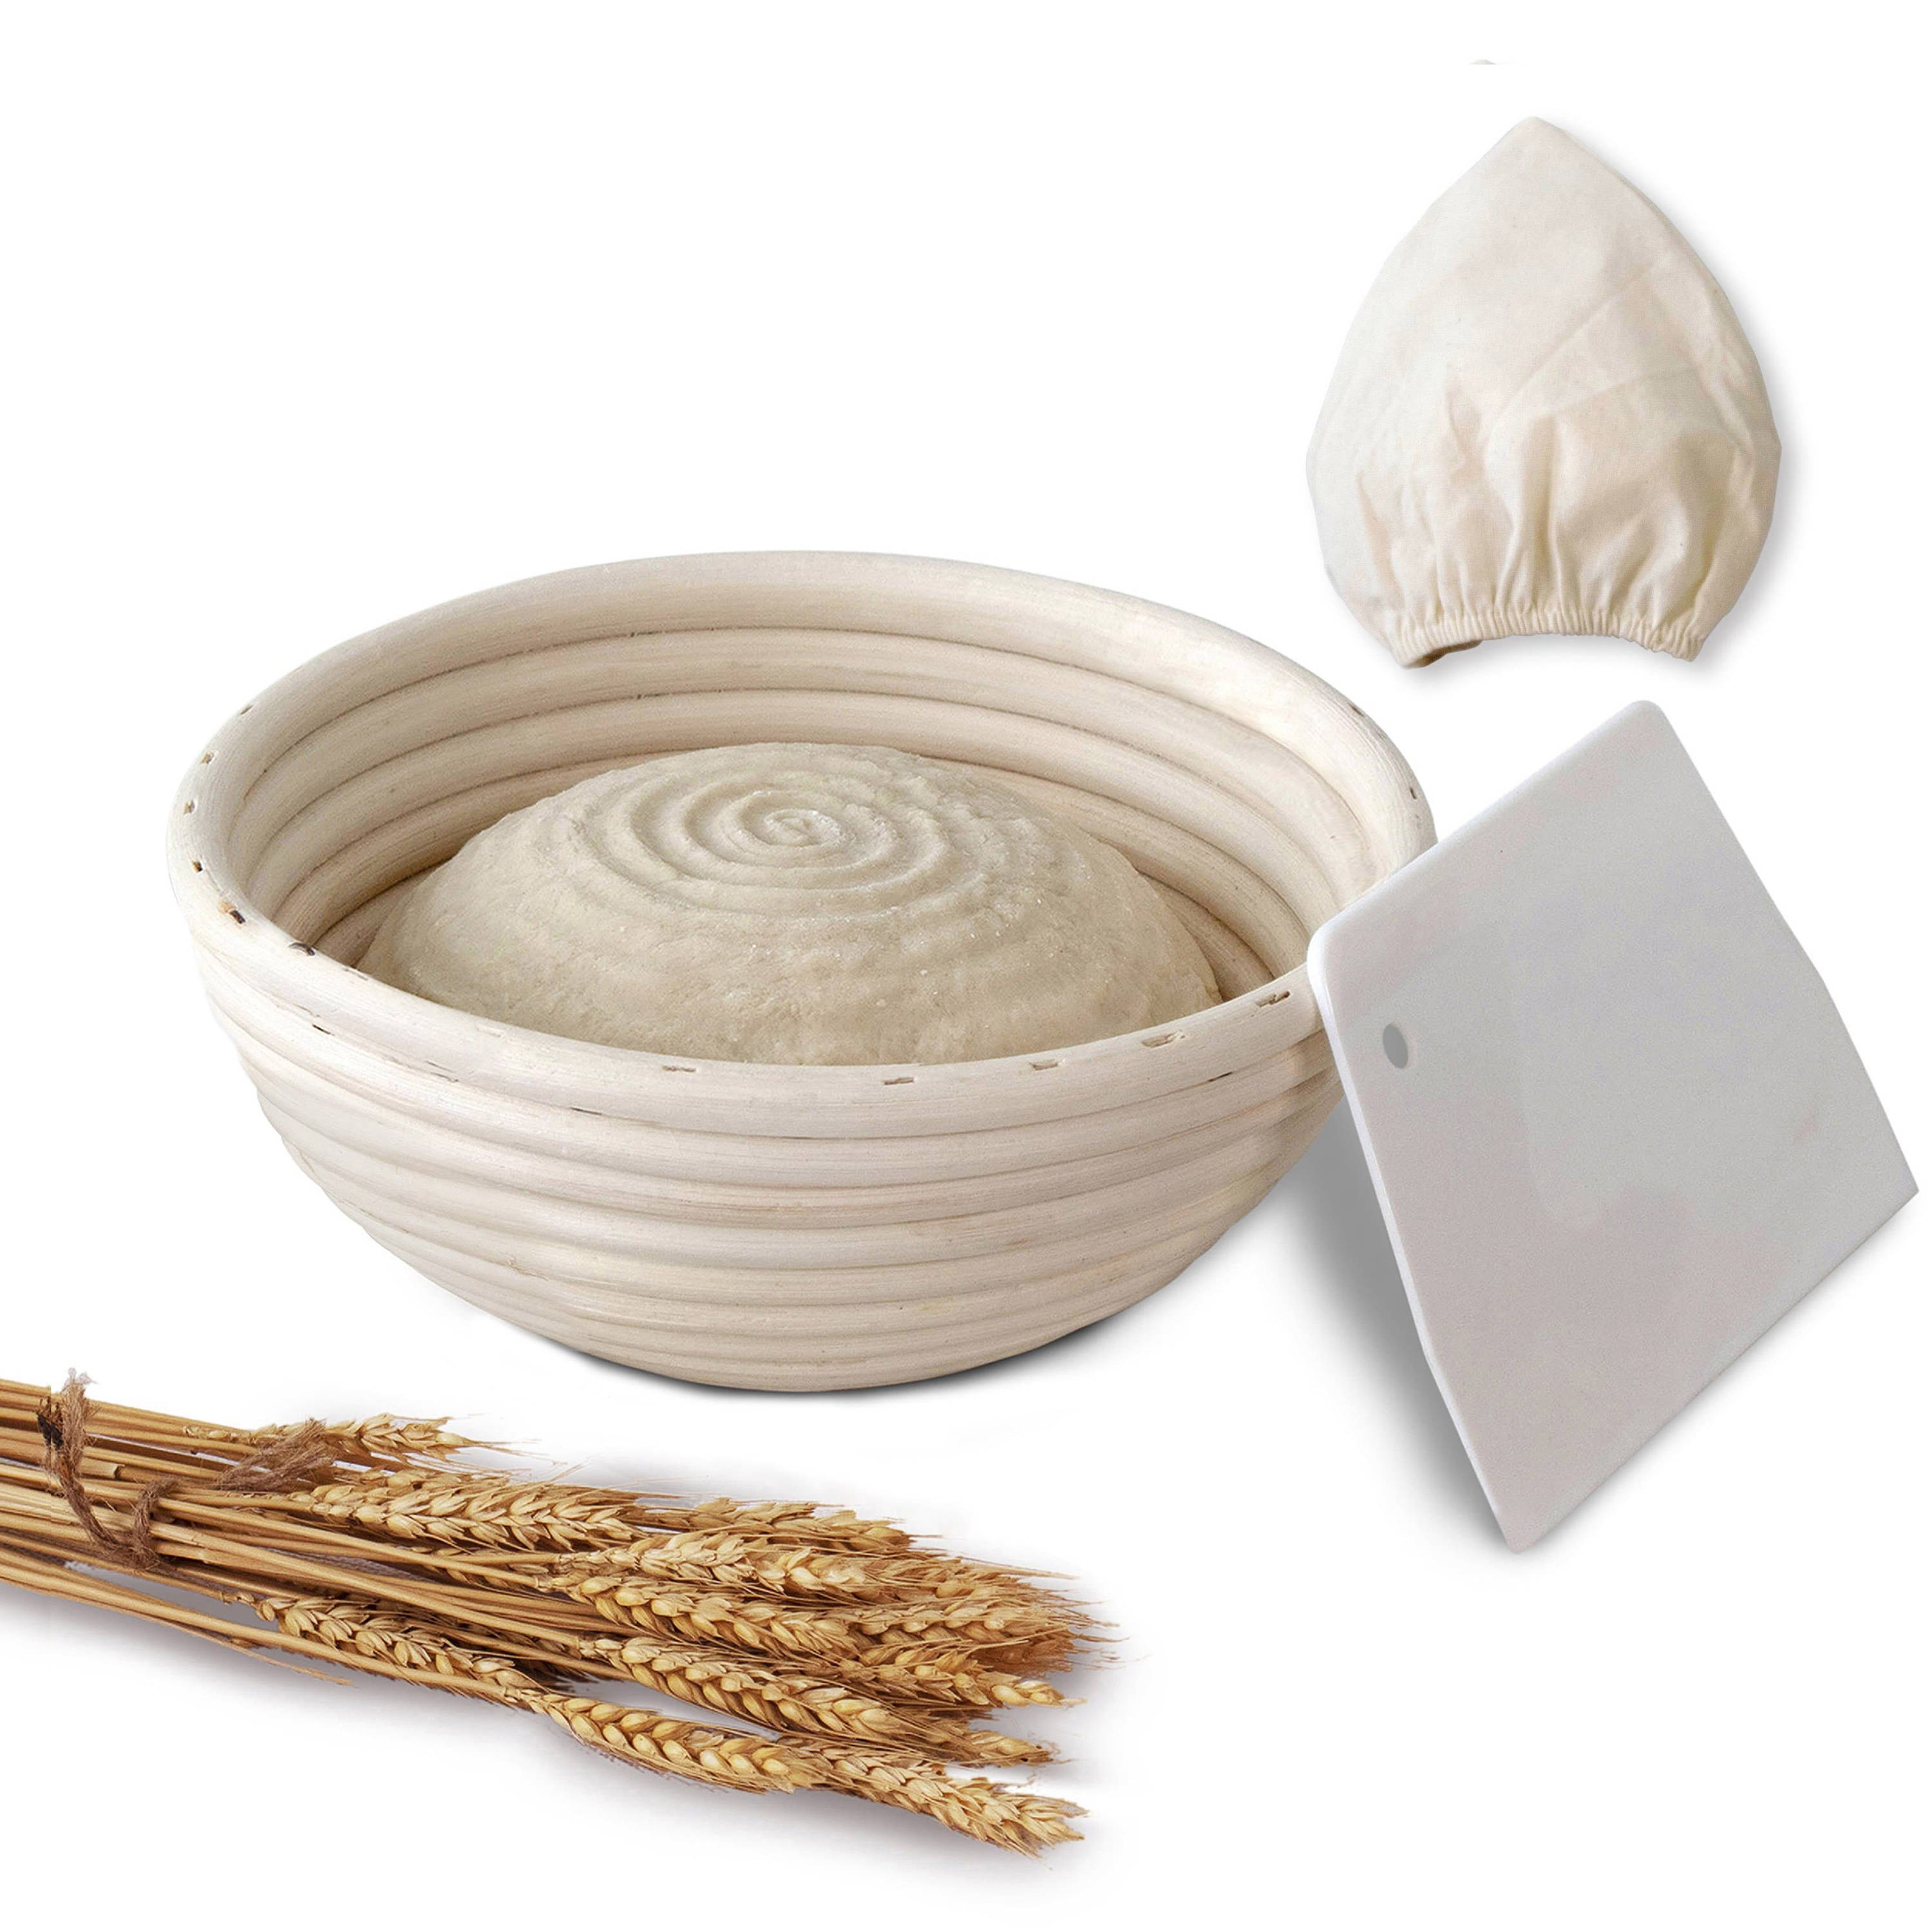 25158cm Banneton Proofing Basket Set Handmade Unbleached Natural Cane Banneton Proofing Basket Dough Bread Baking Kit 